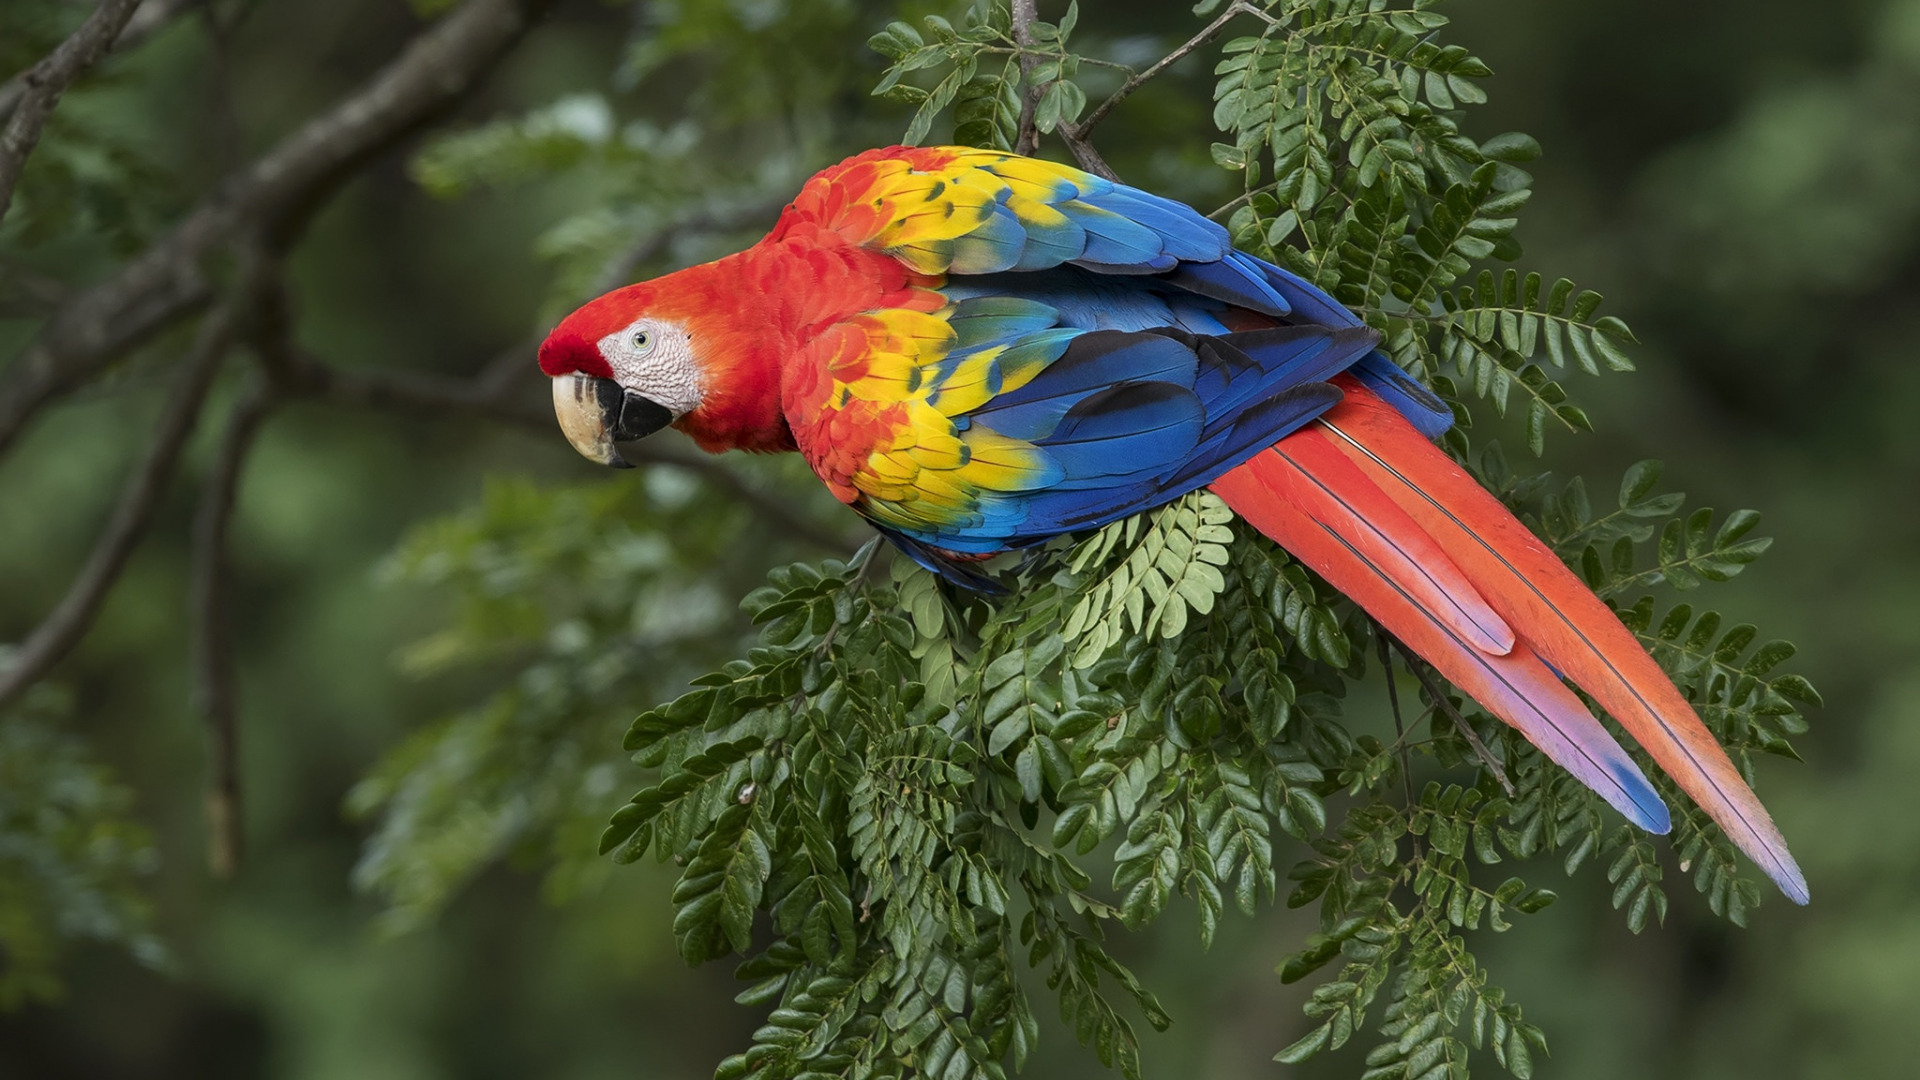  تصویر جالب و حیرت انگیز از پرنده با بال های رنگارنگ 